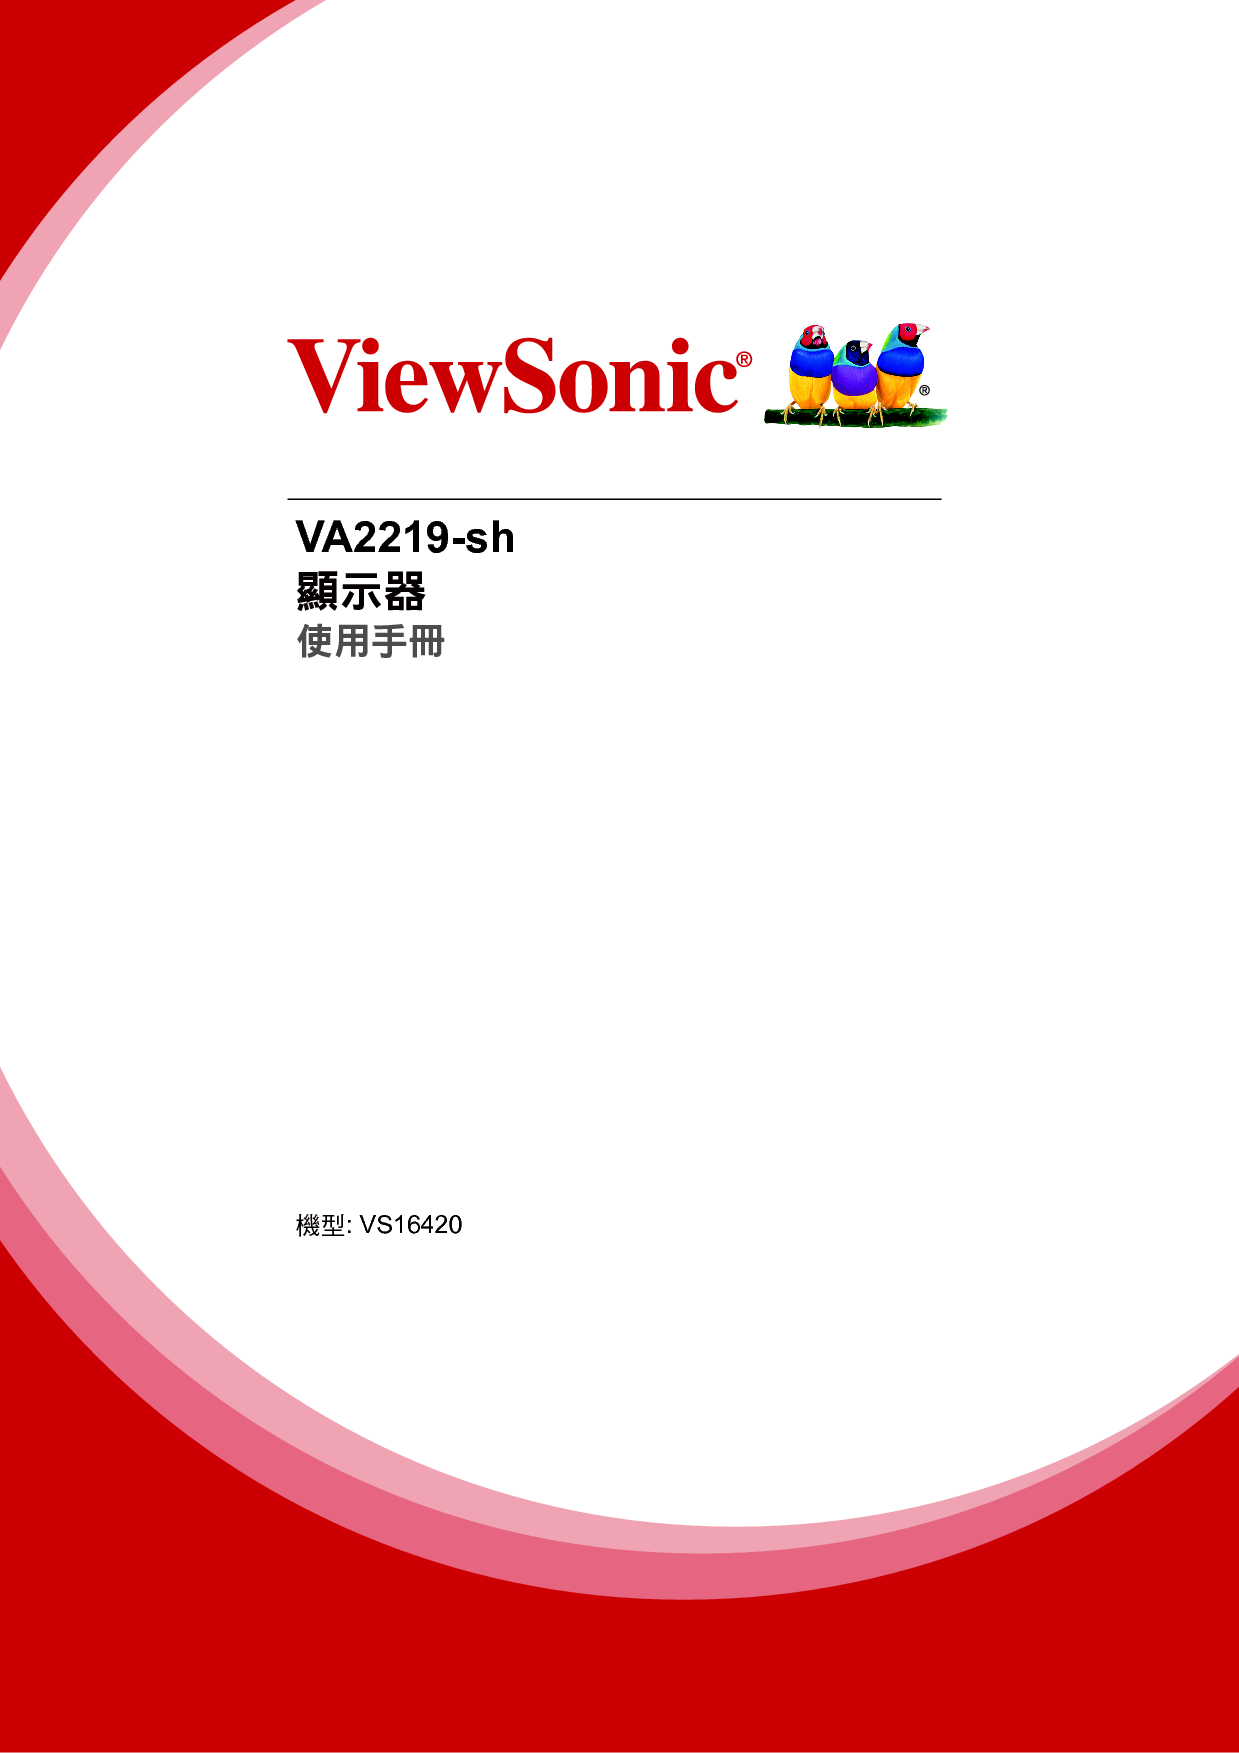 优派 ViewSonic VA2219-sh 繁体 使用手册 封面